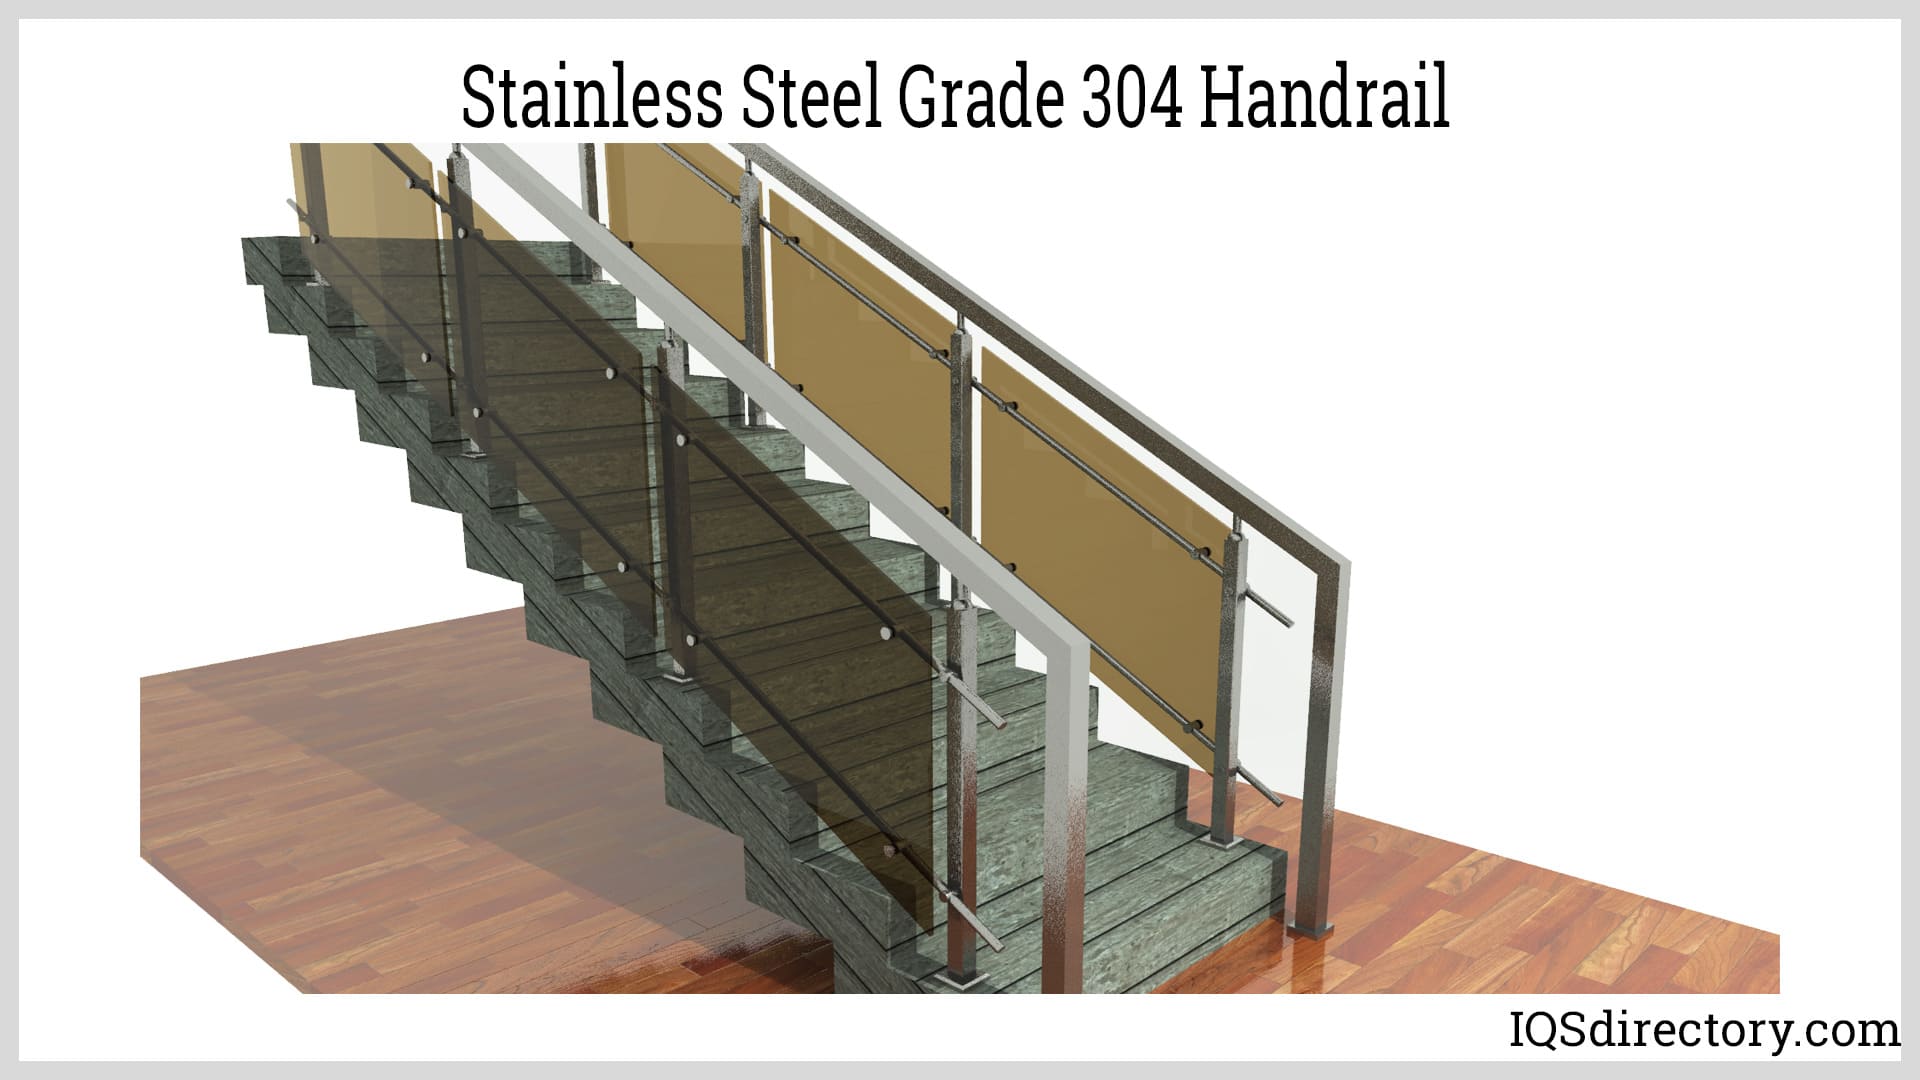 Stainless Steel Grade 304 Handrail